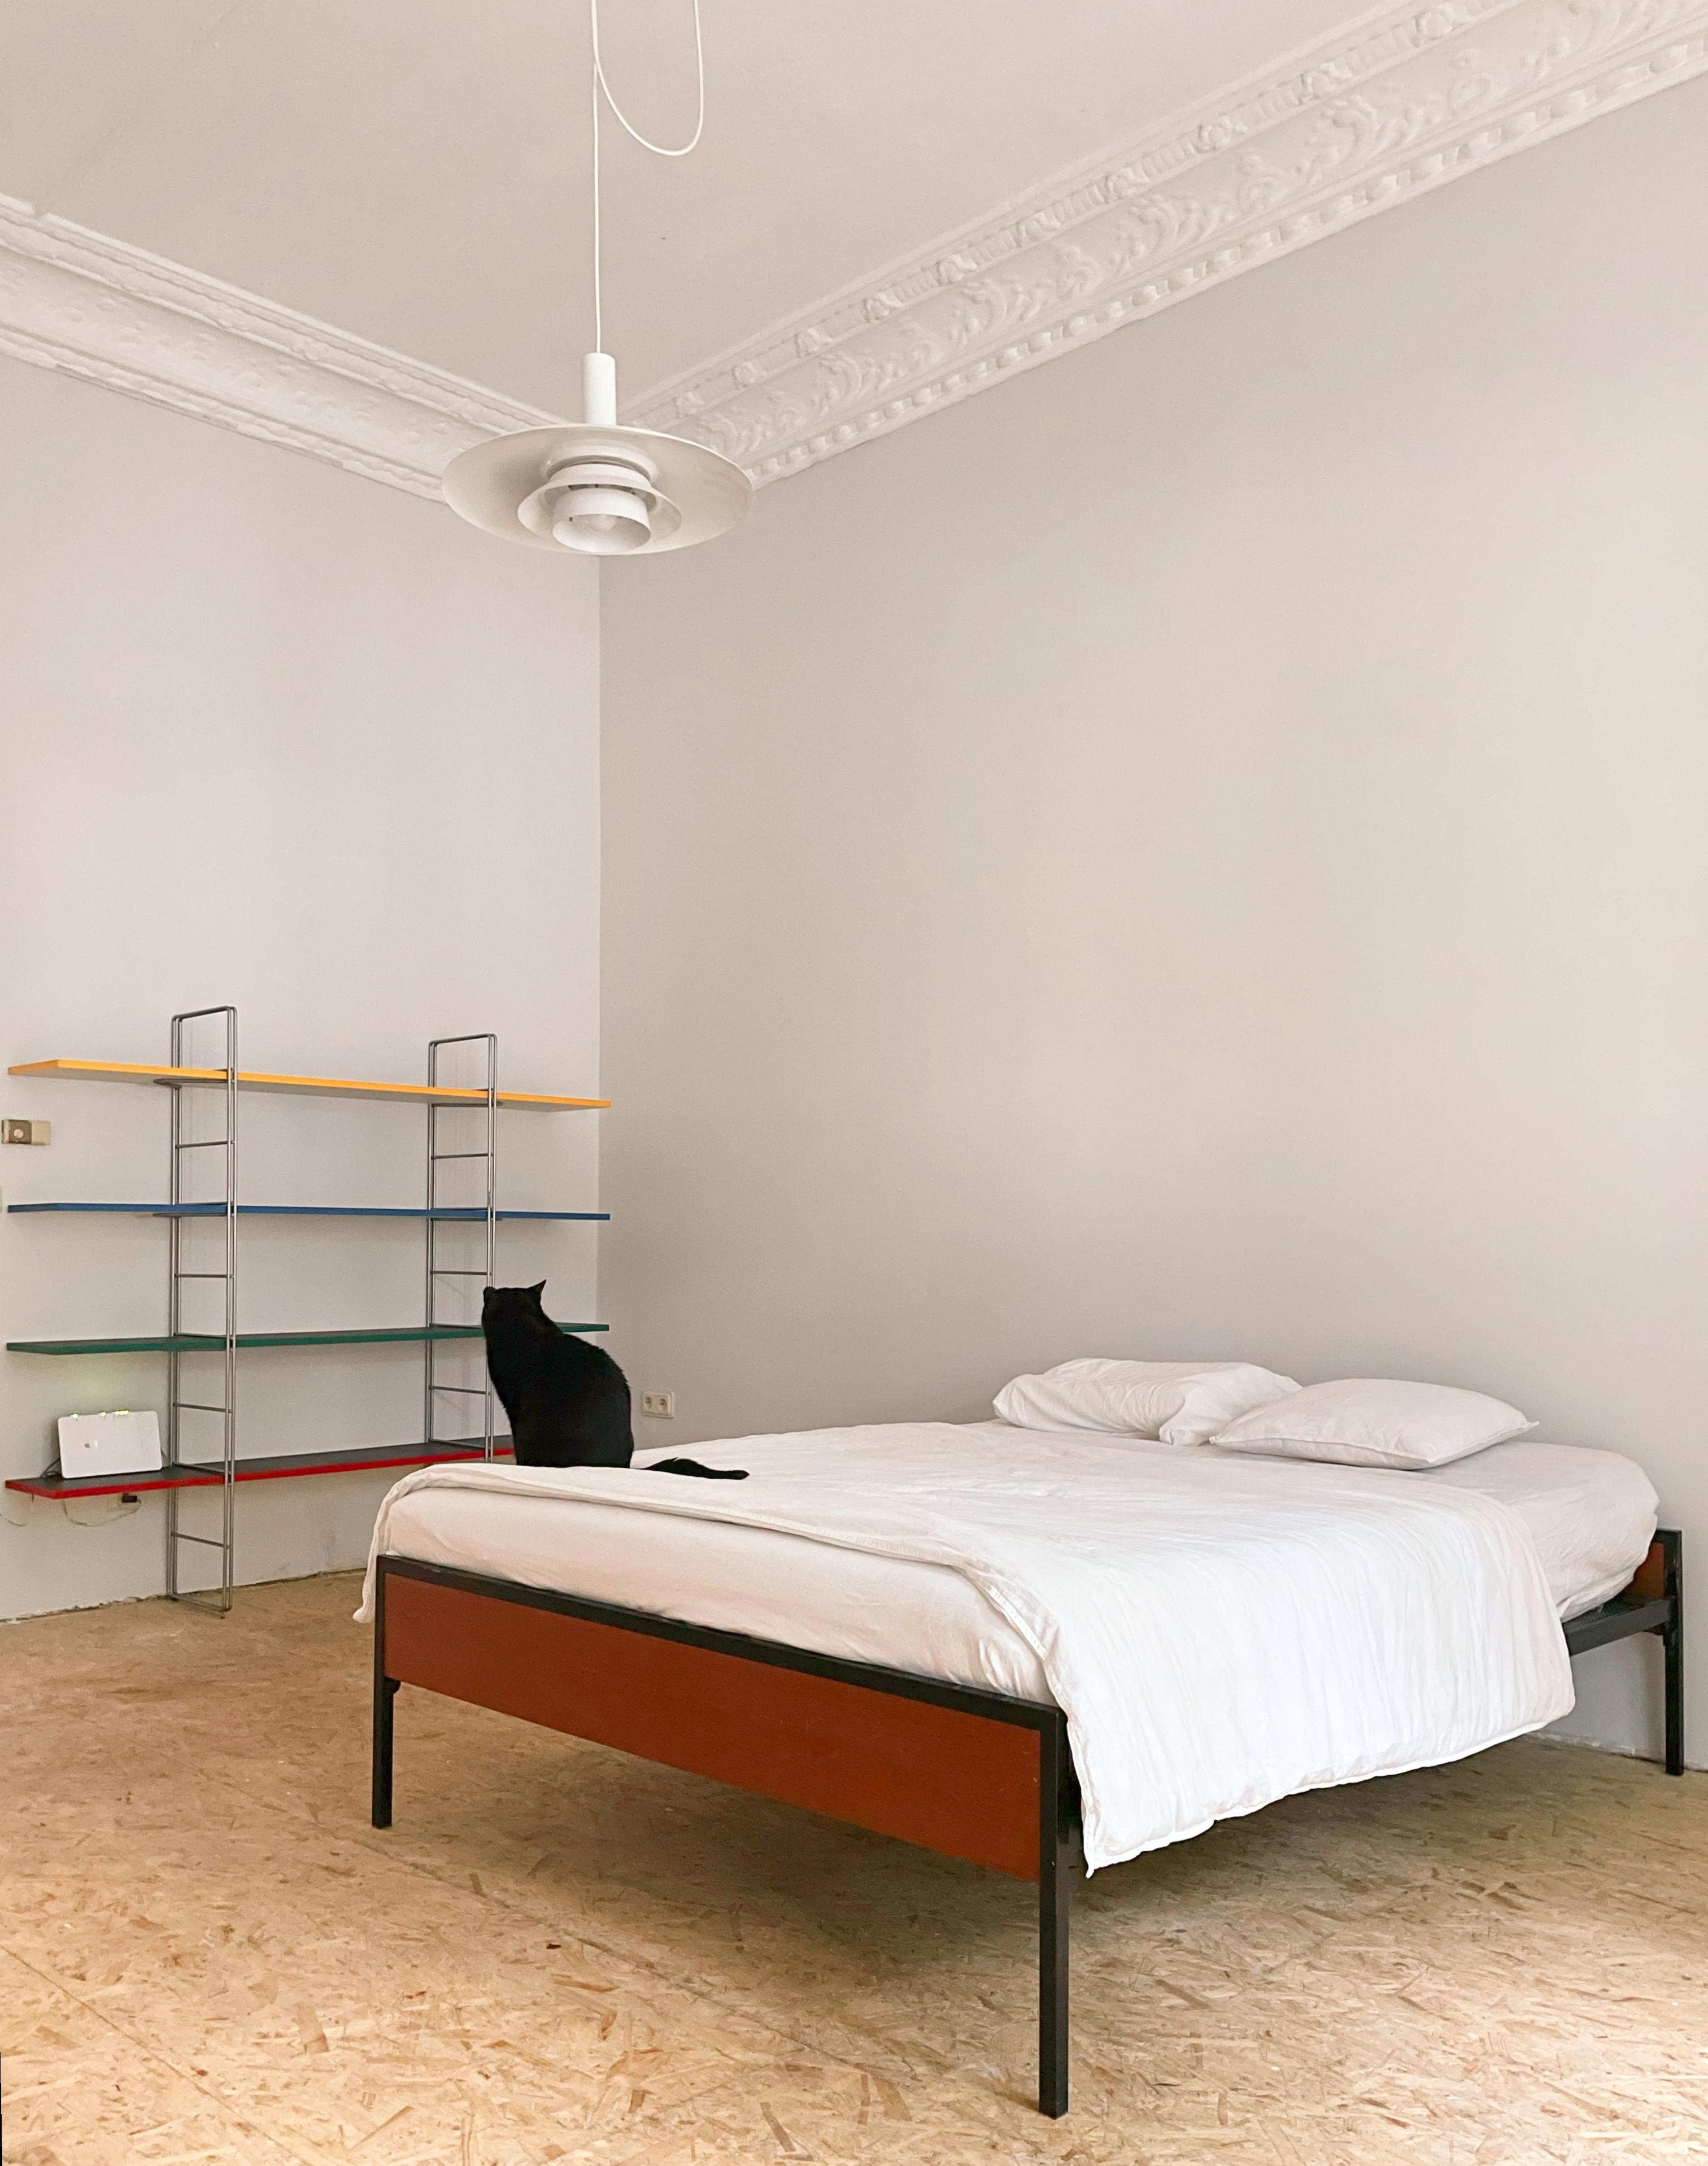 Wir haben das Schlafzimmer renoviert! #vintagebedroom #nielsgammelgaard #teakbett